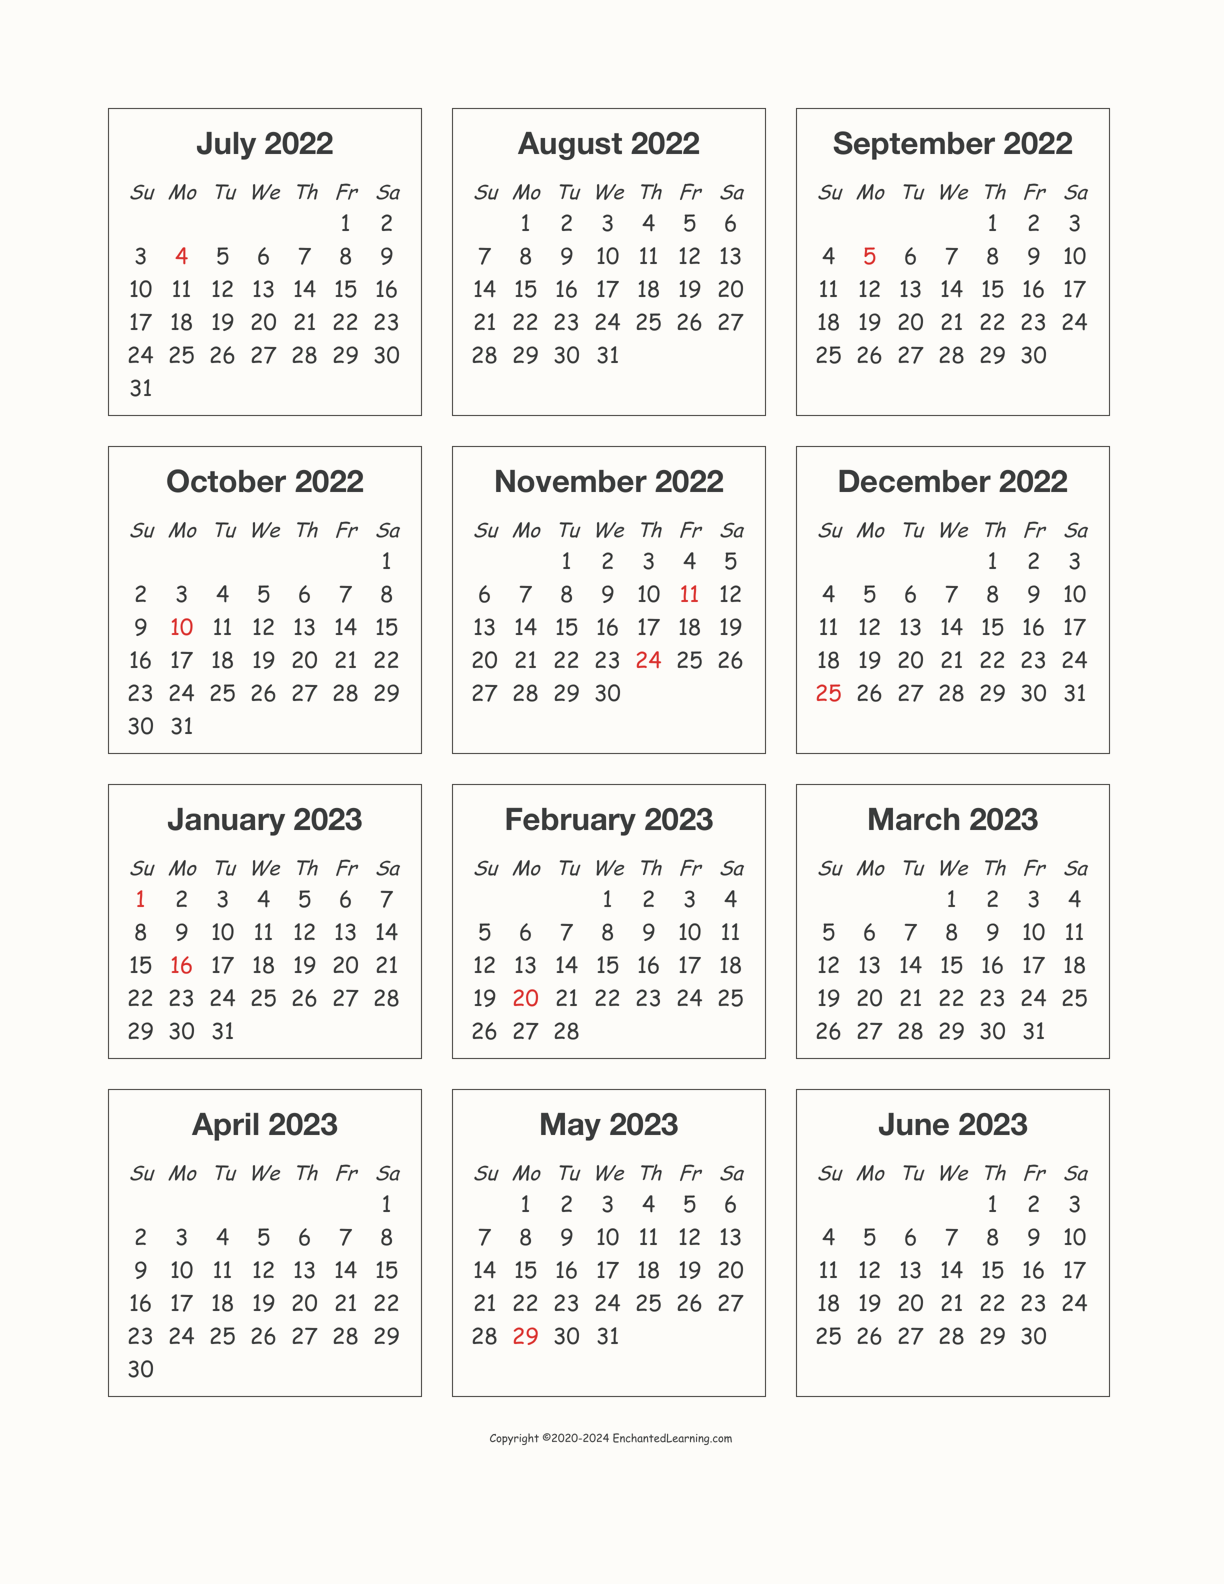 ucf-2022-2023-calendar-customize-and-print